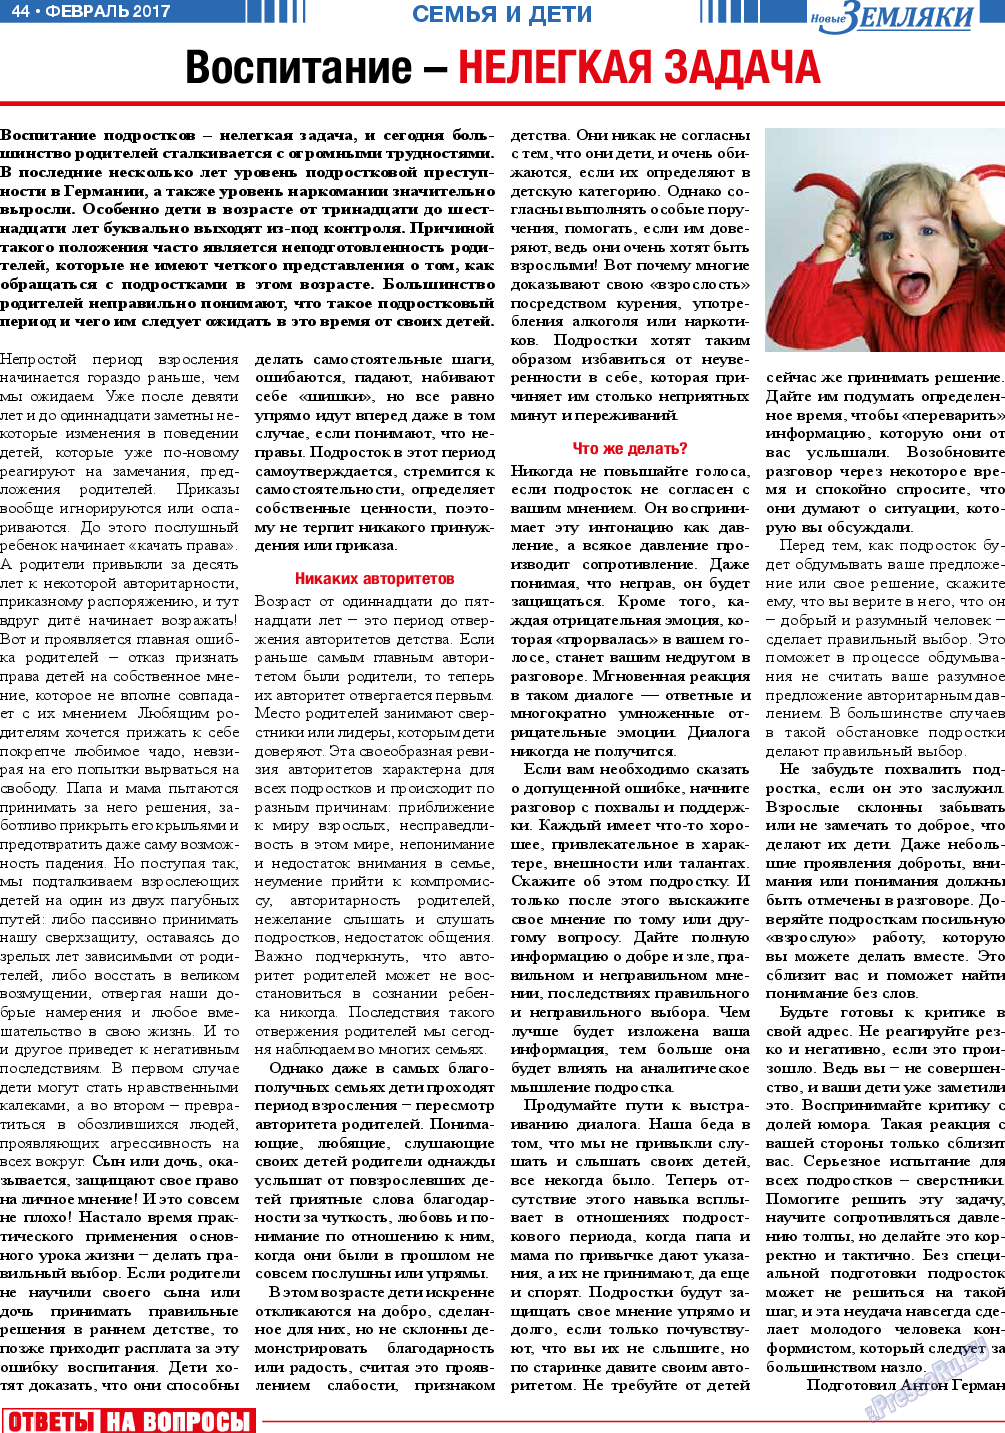 Новые Земляки, газета. 2017 №2 стр.44